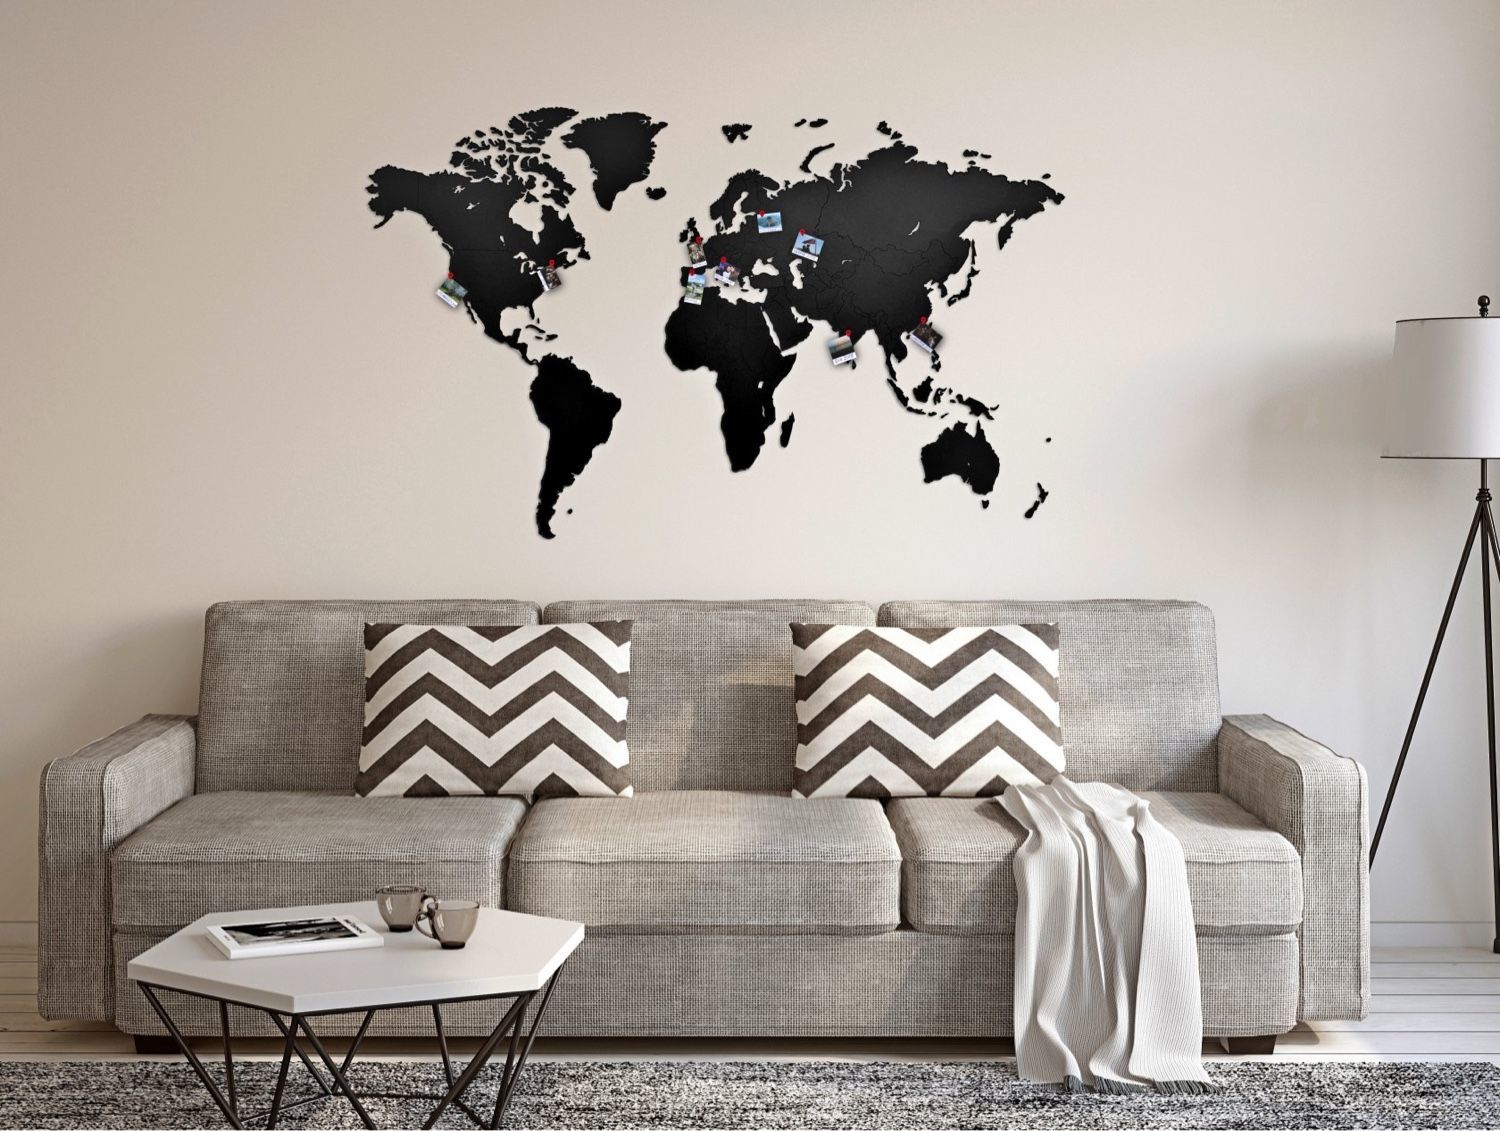 Карта мира деревянная Wall Decoration Black 130x78, Карты мира, Москва,  Фото №1